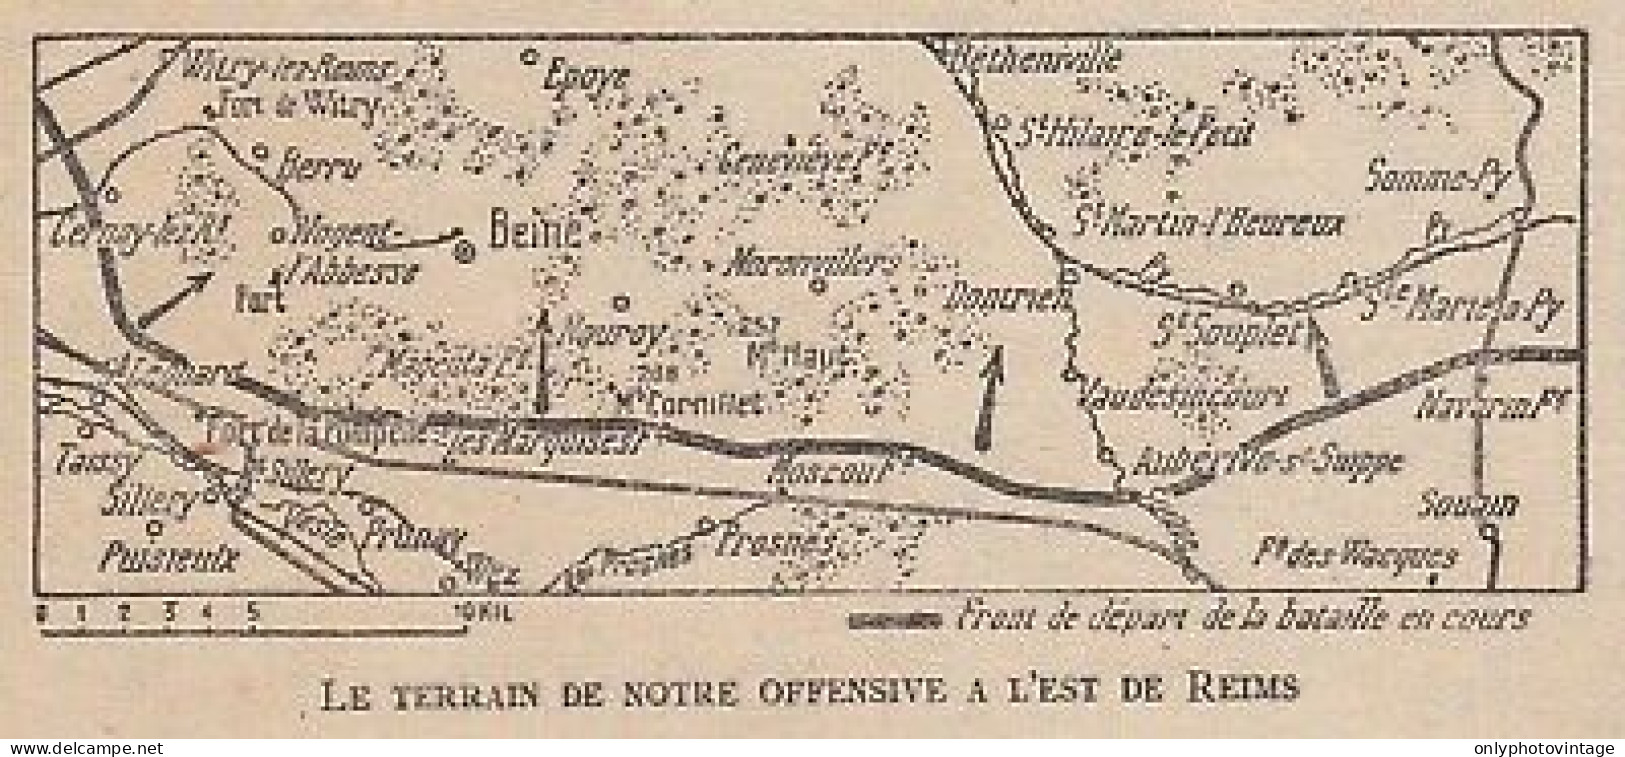 Le Terrain De Offensive Française A L'est De Reims - 1917 Vintage Map - Carte Geographique